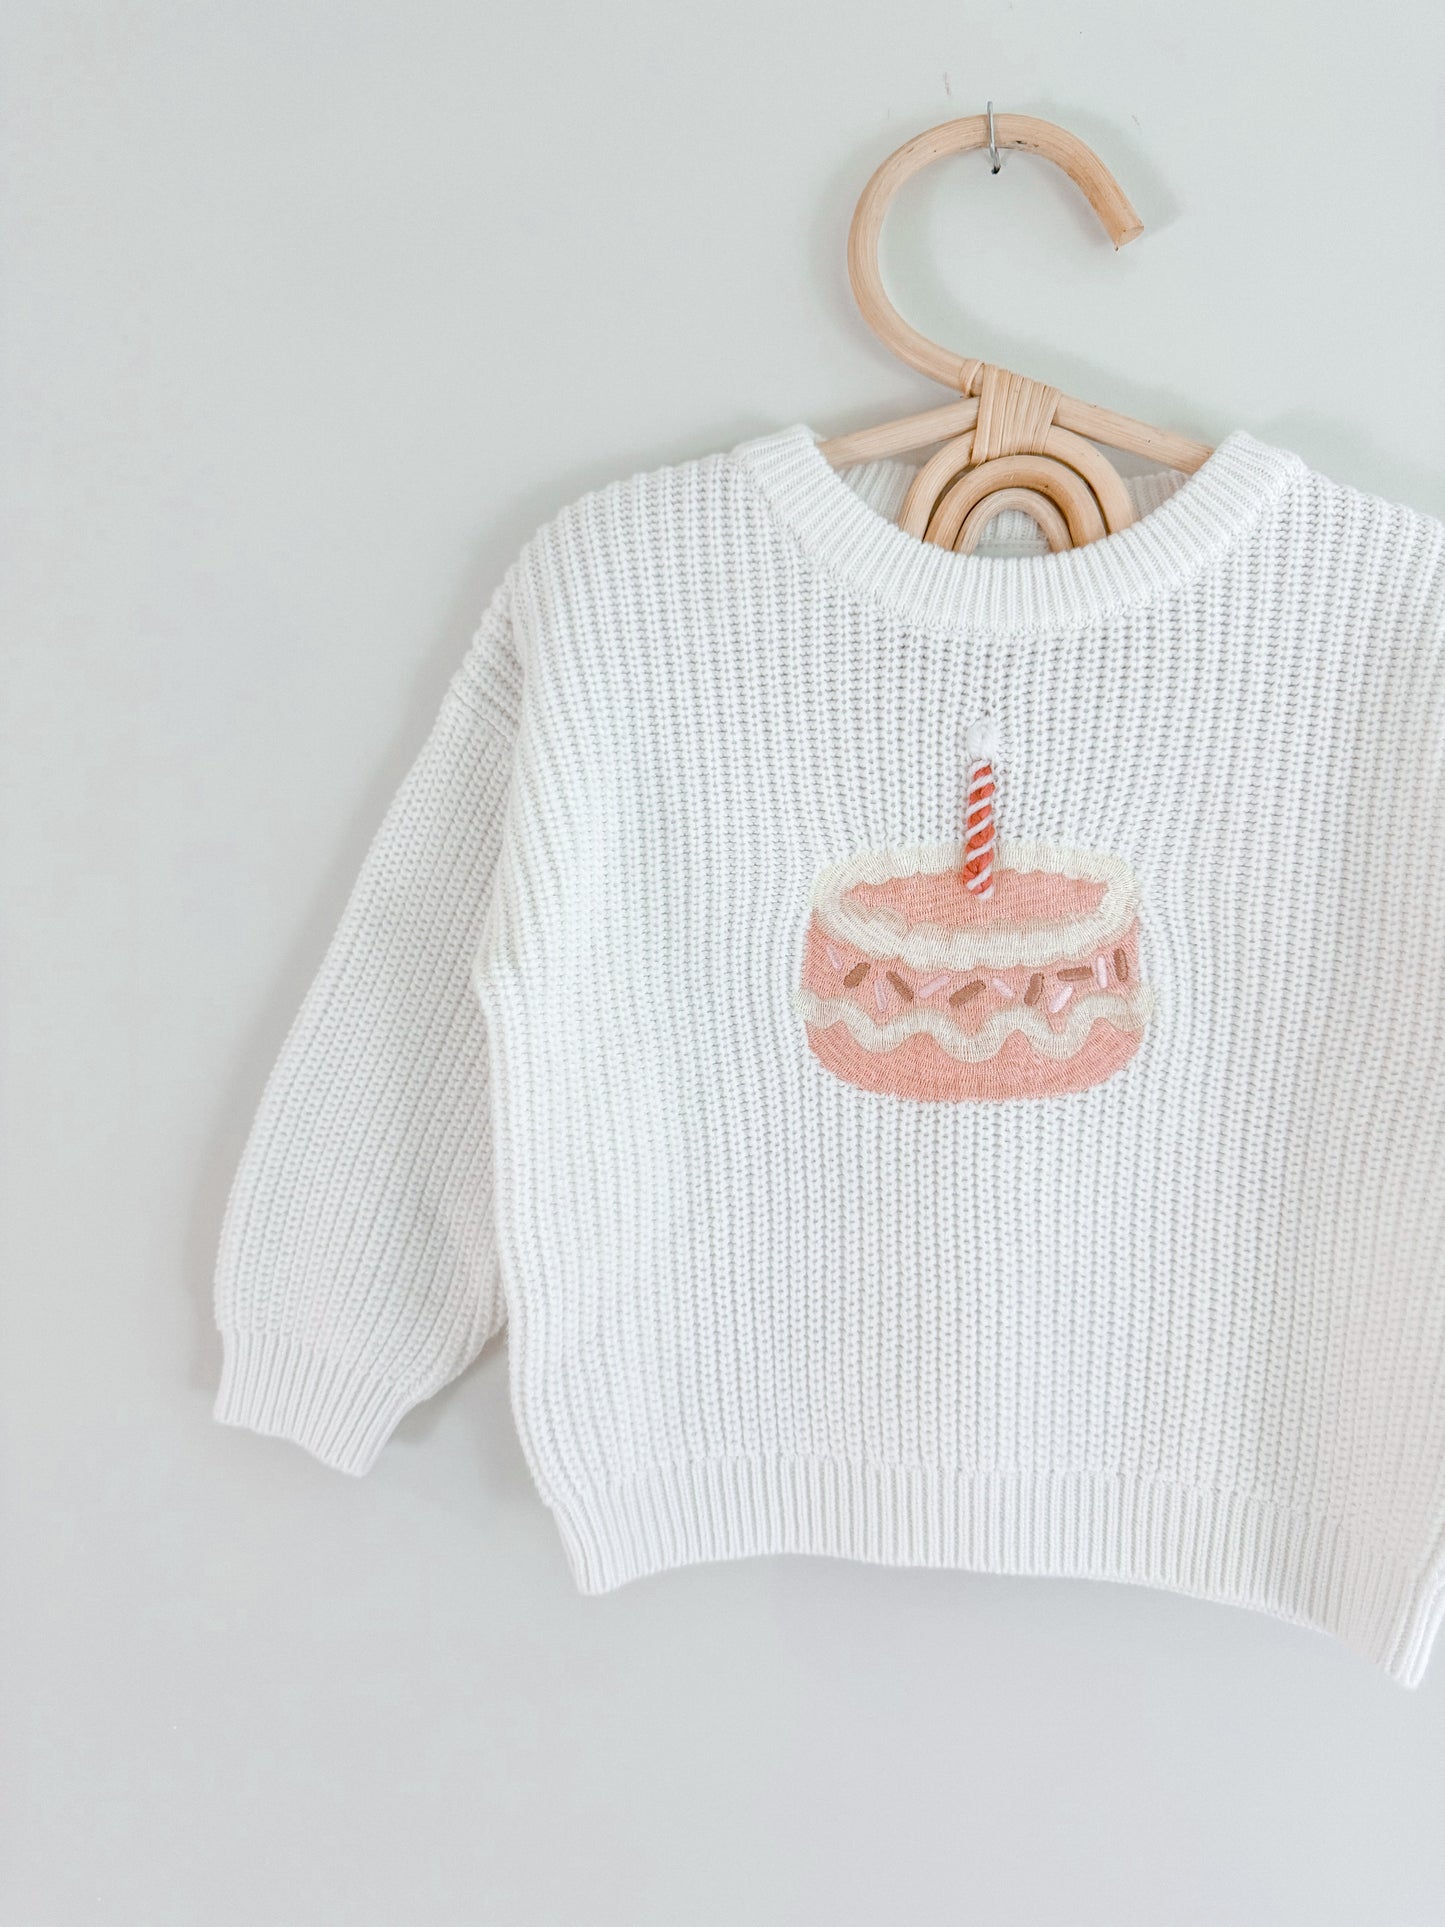 Birthday Cake Sweater